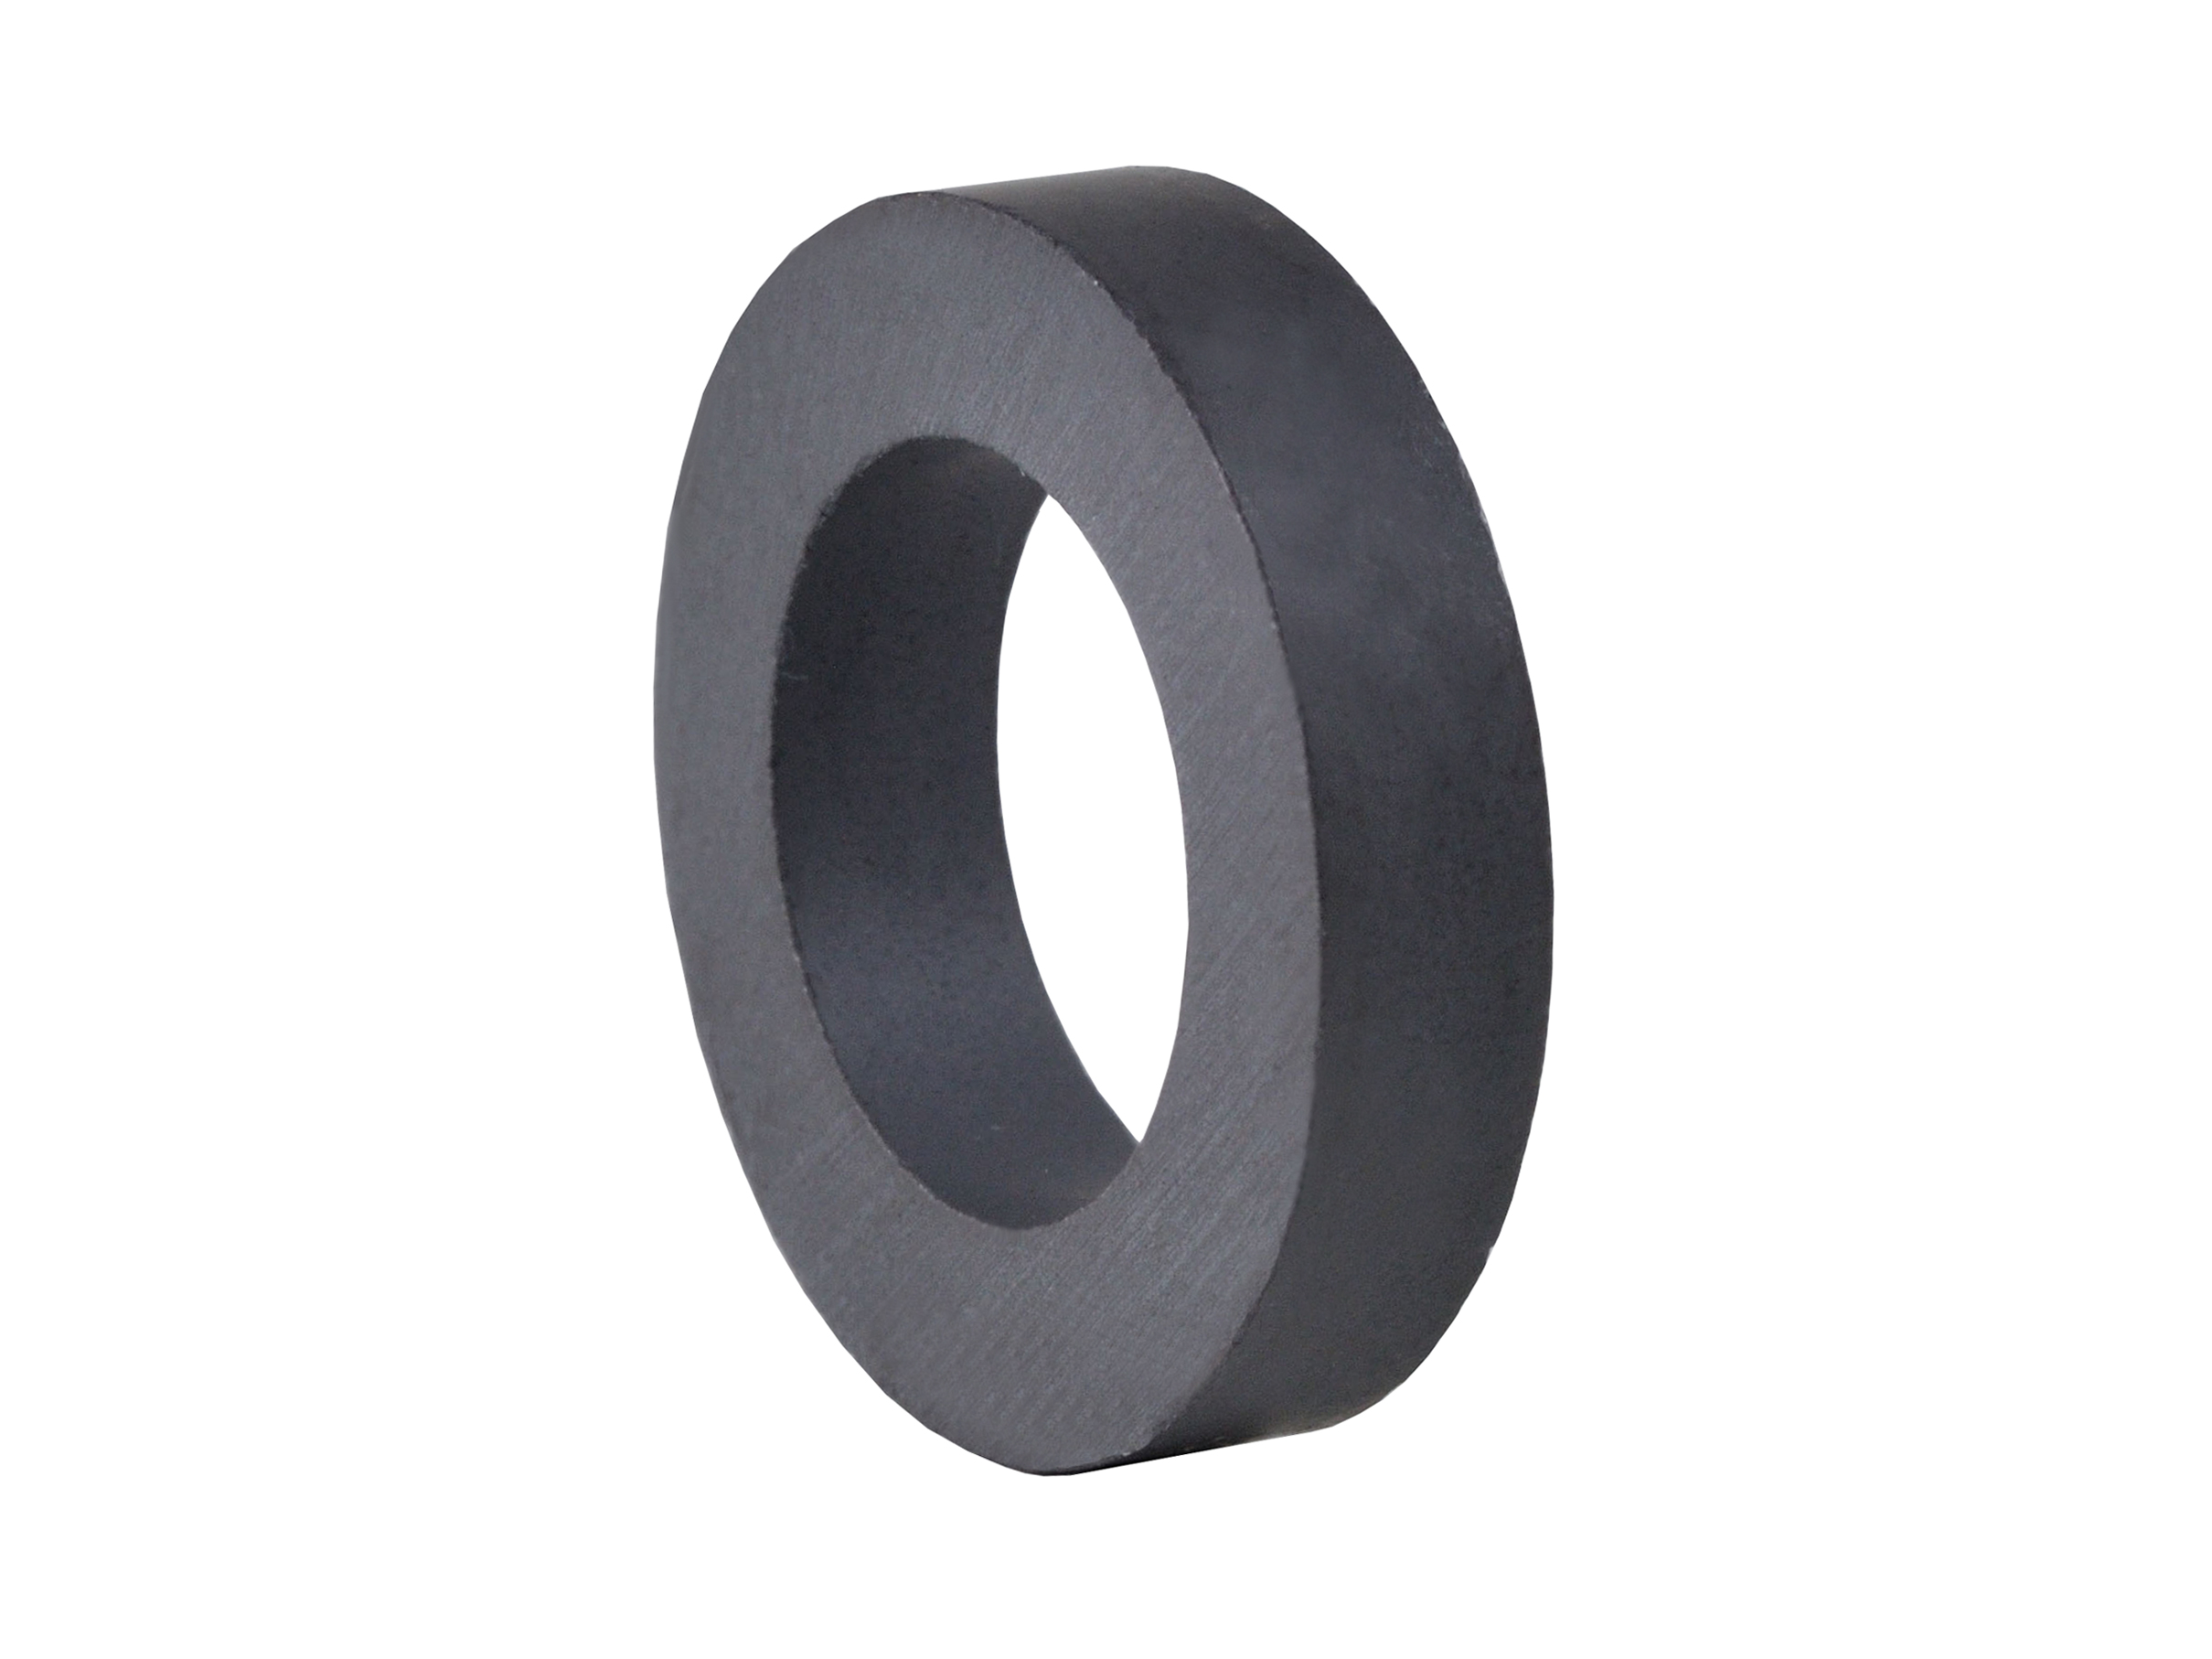 Ring‑Shaped Ferrite Magnet (FRR13) 